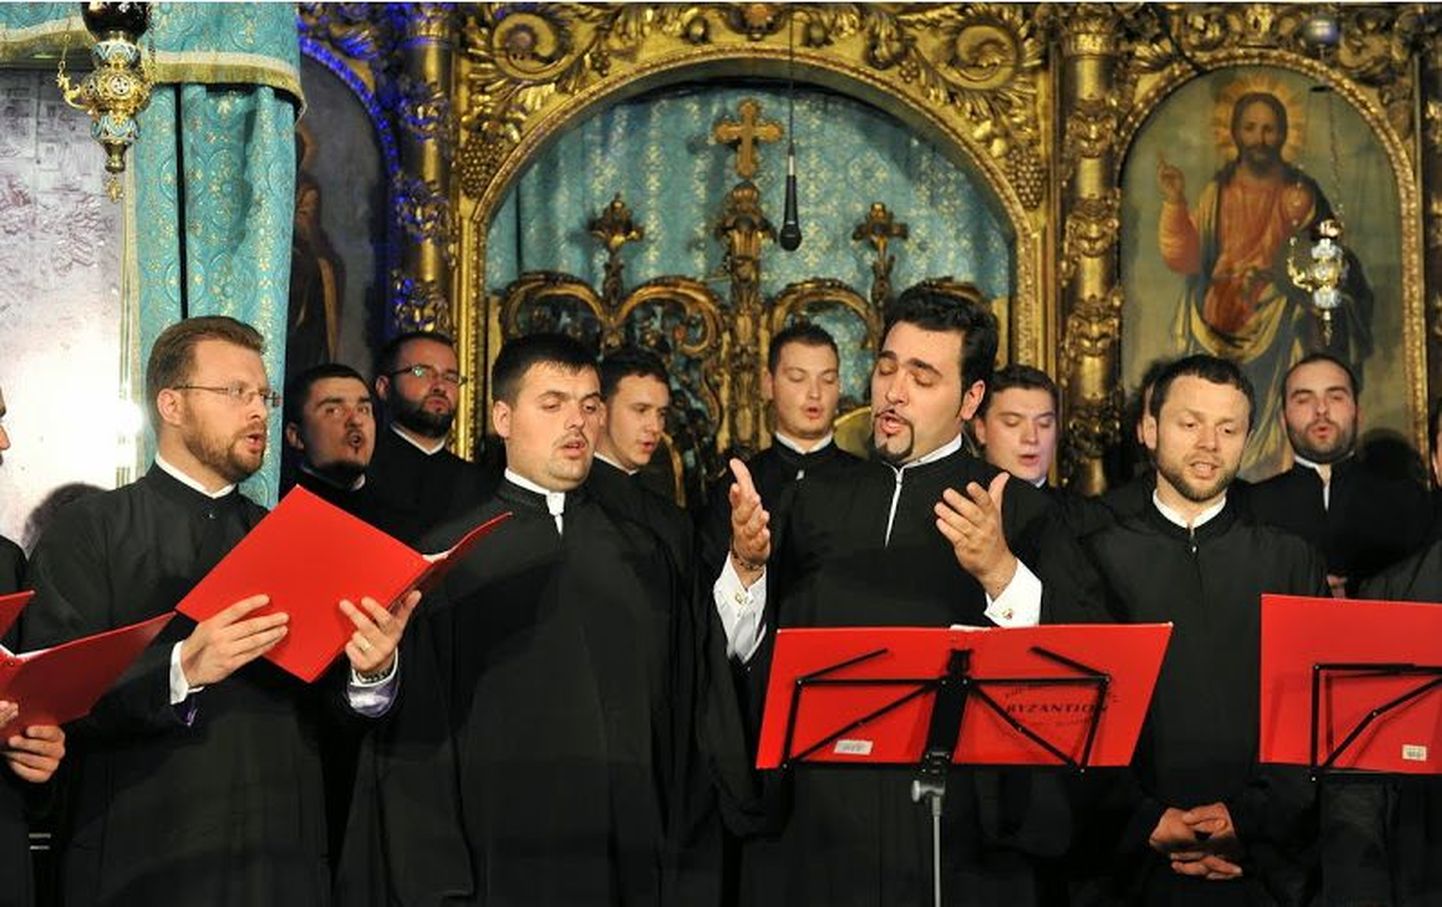 Румынский хор Byzantion возрождает византийские традиции.